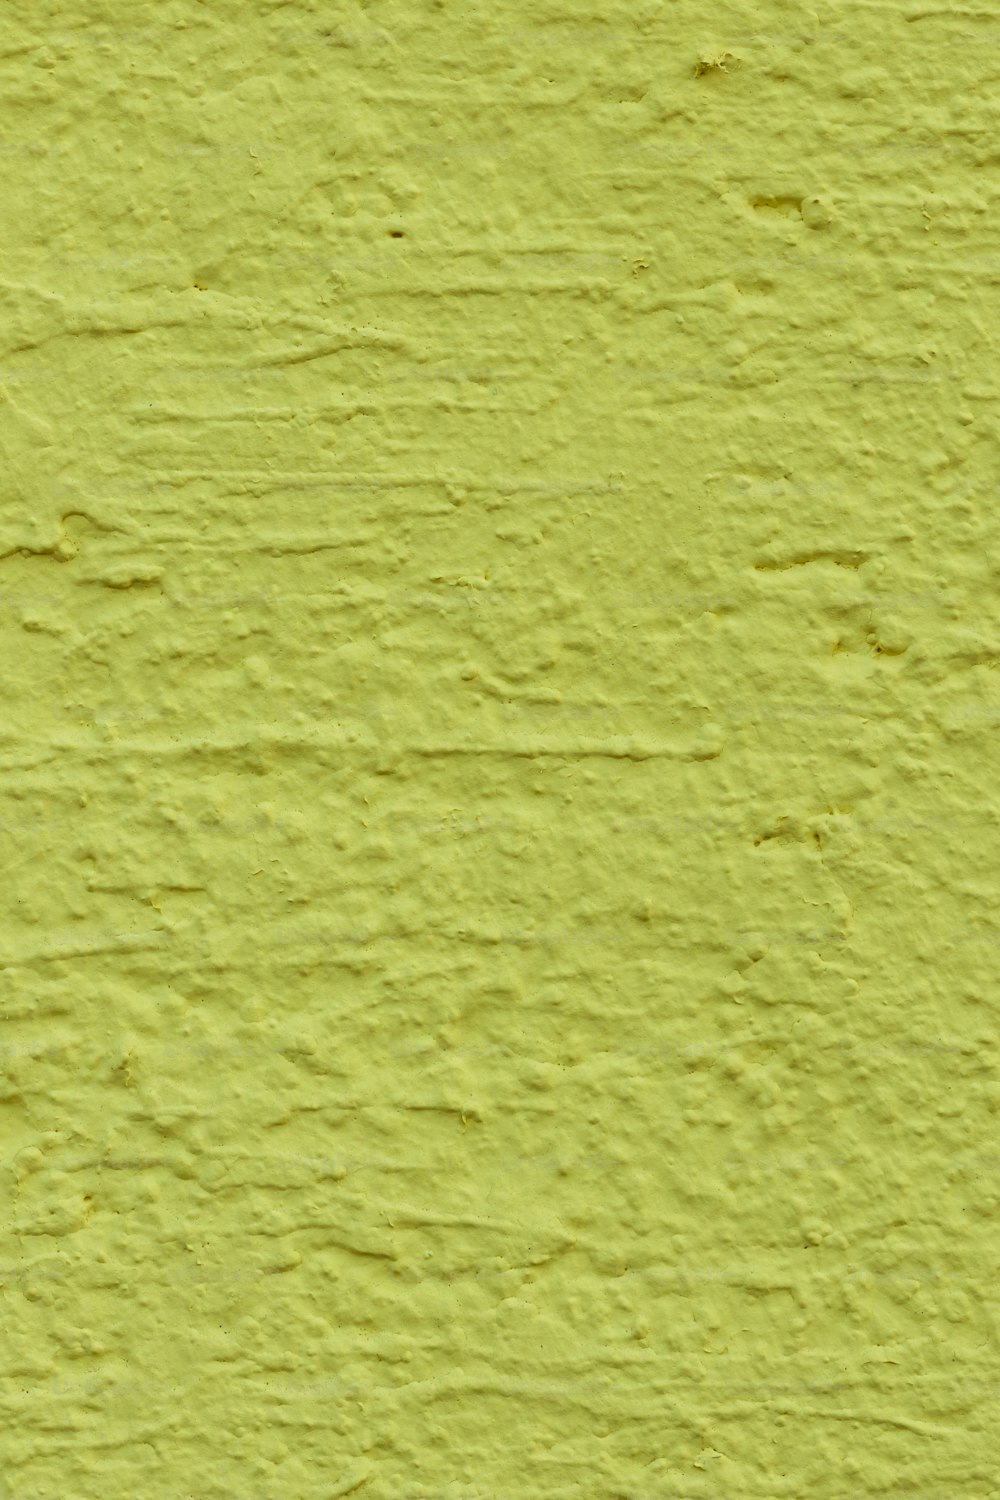 um close up de uma parede pintada de amarelo